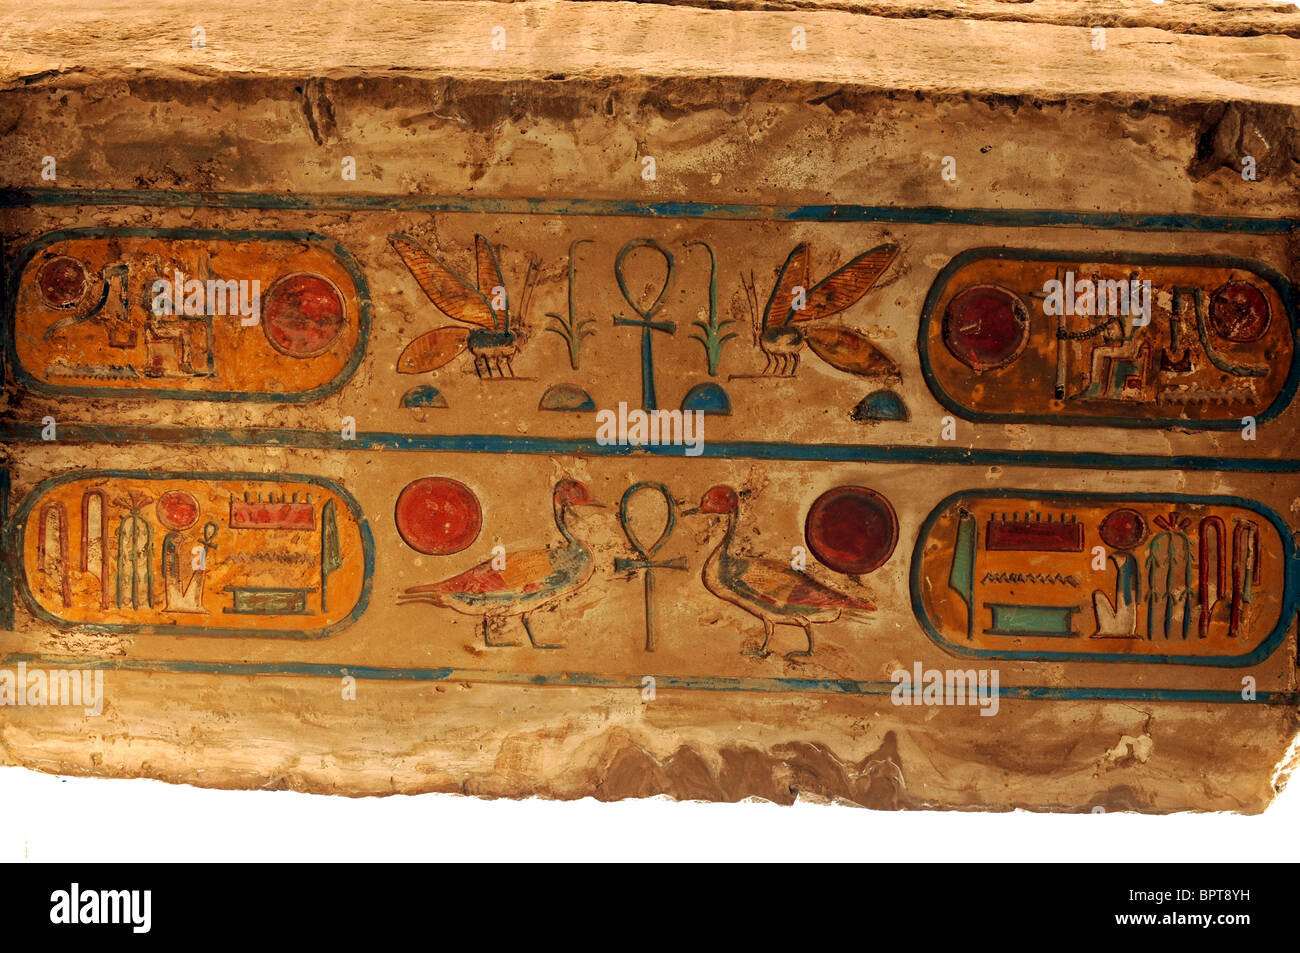 Tempio di Karnak Luxor Egitto. Dipinto kartushs alcuni 2500 anni e ancora altamente colorato. Karnak, Egitto. Foto Stock